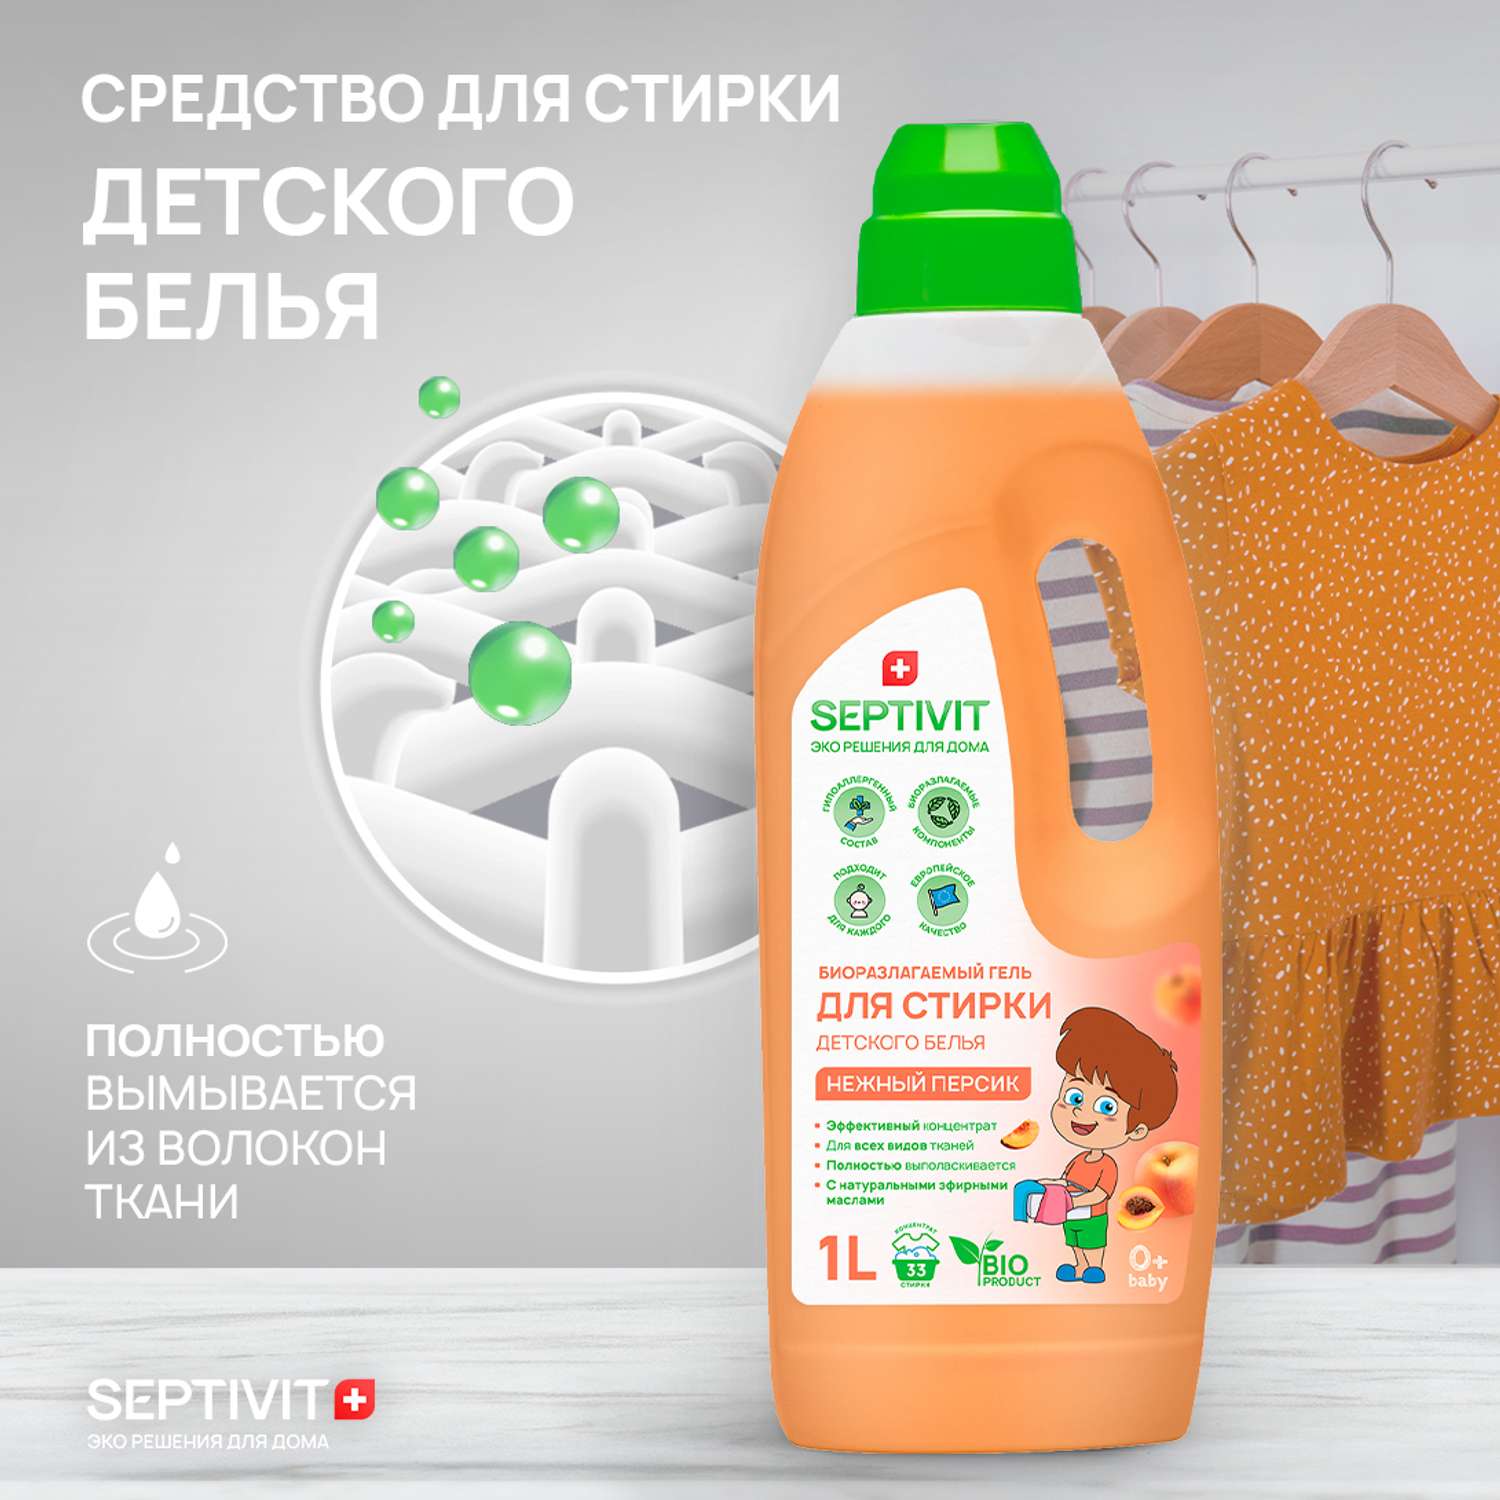 Гель для стирки детского белья SEPTIVIT Premium с ароматом Нежный персик 1л - фото 3